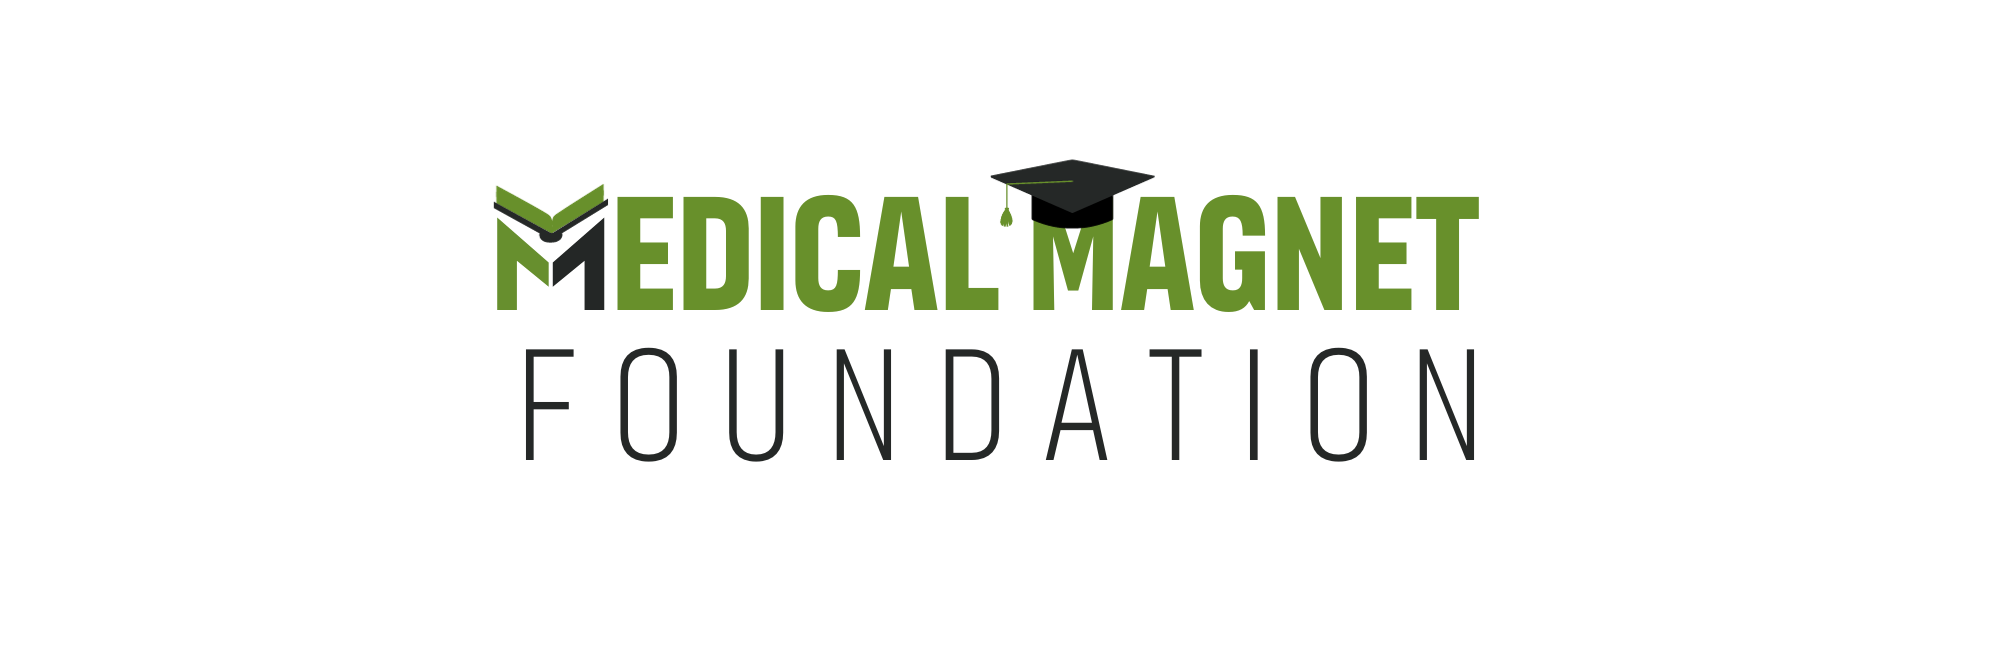 Medical Magnet Foundation